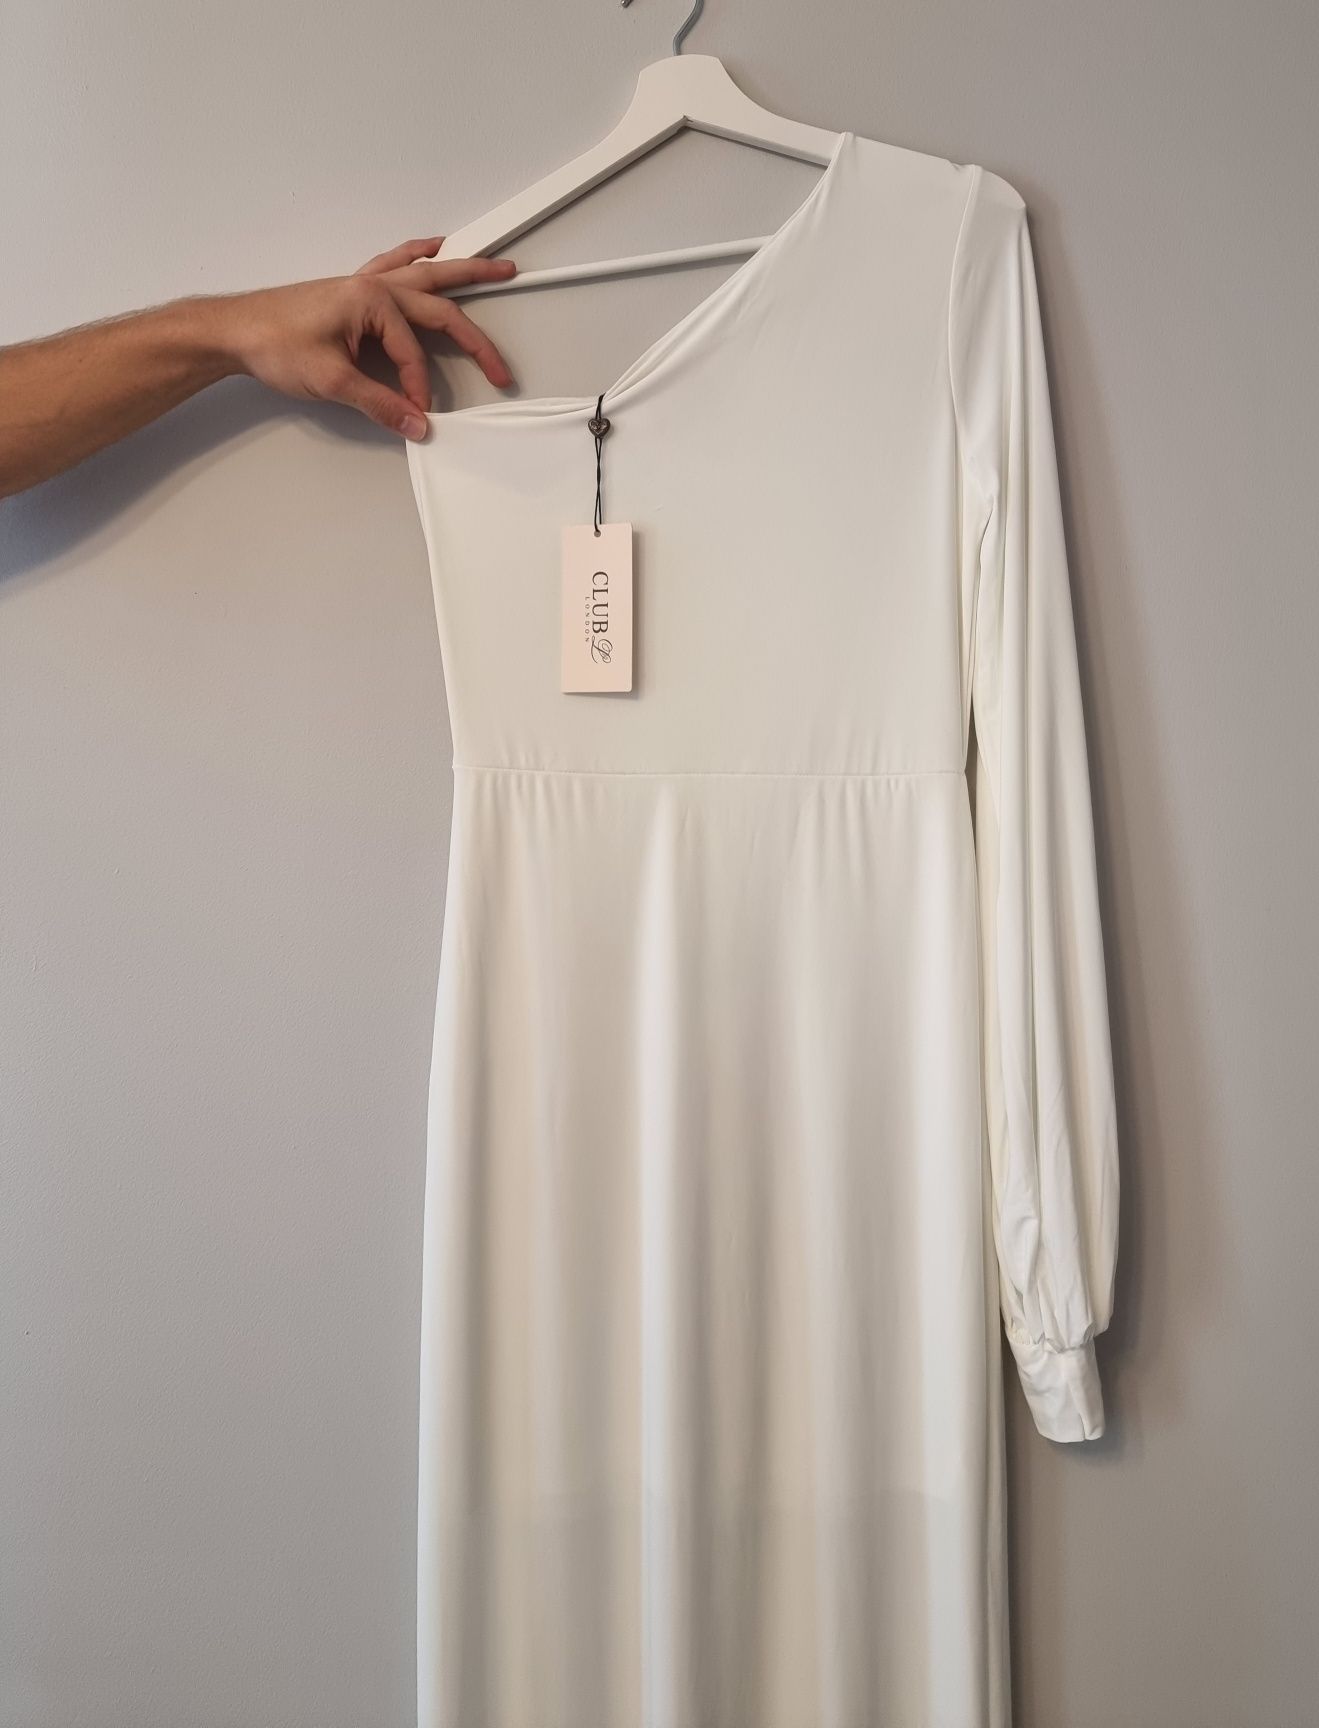 Piękna biała sukienka z odkrytym ramieniem z trenem rozmiar L nowa